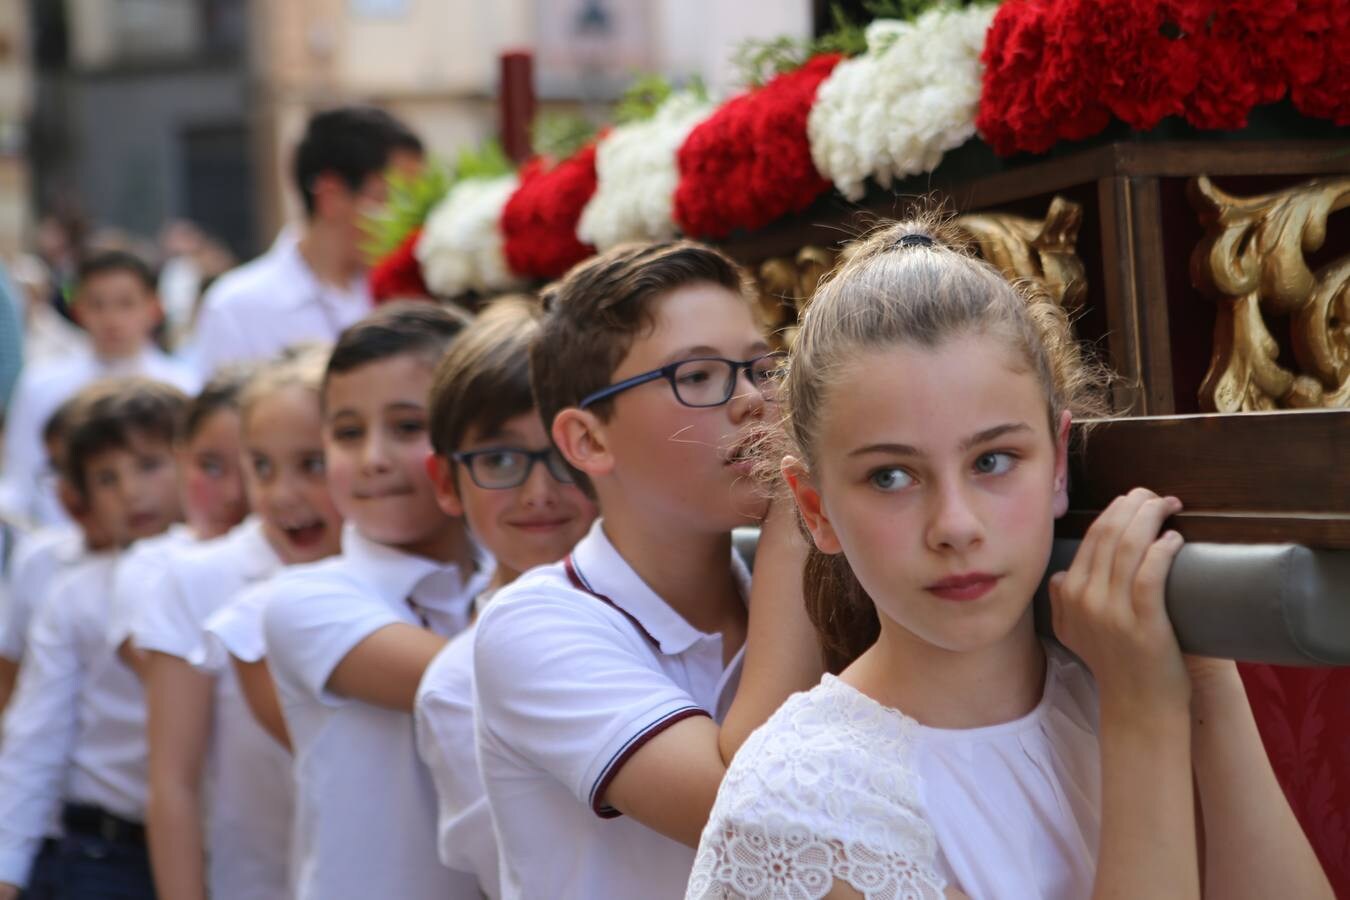 La Semana Santa chica llenó ayer el centro de la capital jienense de niños, padres y abuelos con «auténticas procesiones en miniatura», como las denominó la concejala de Cultura